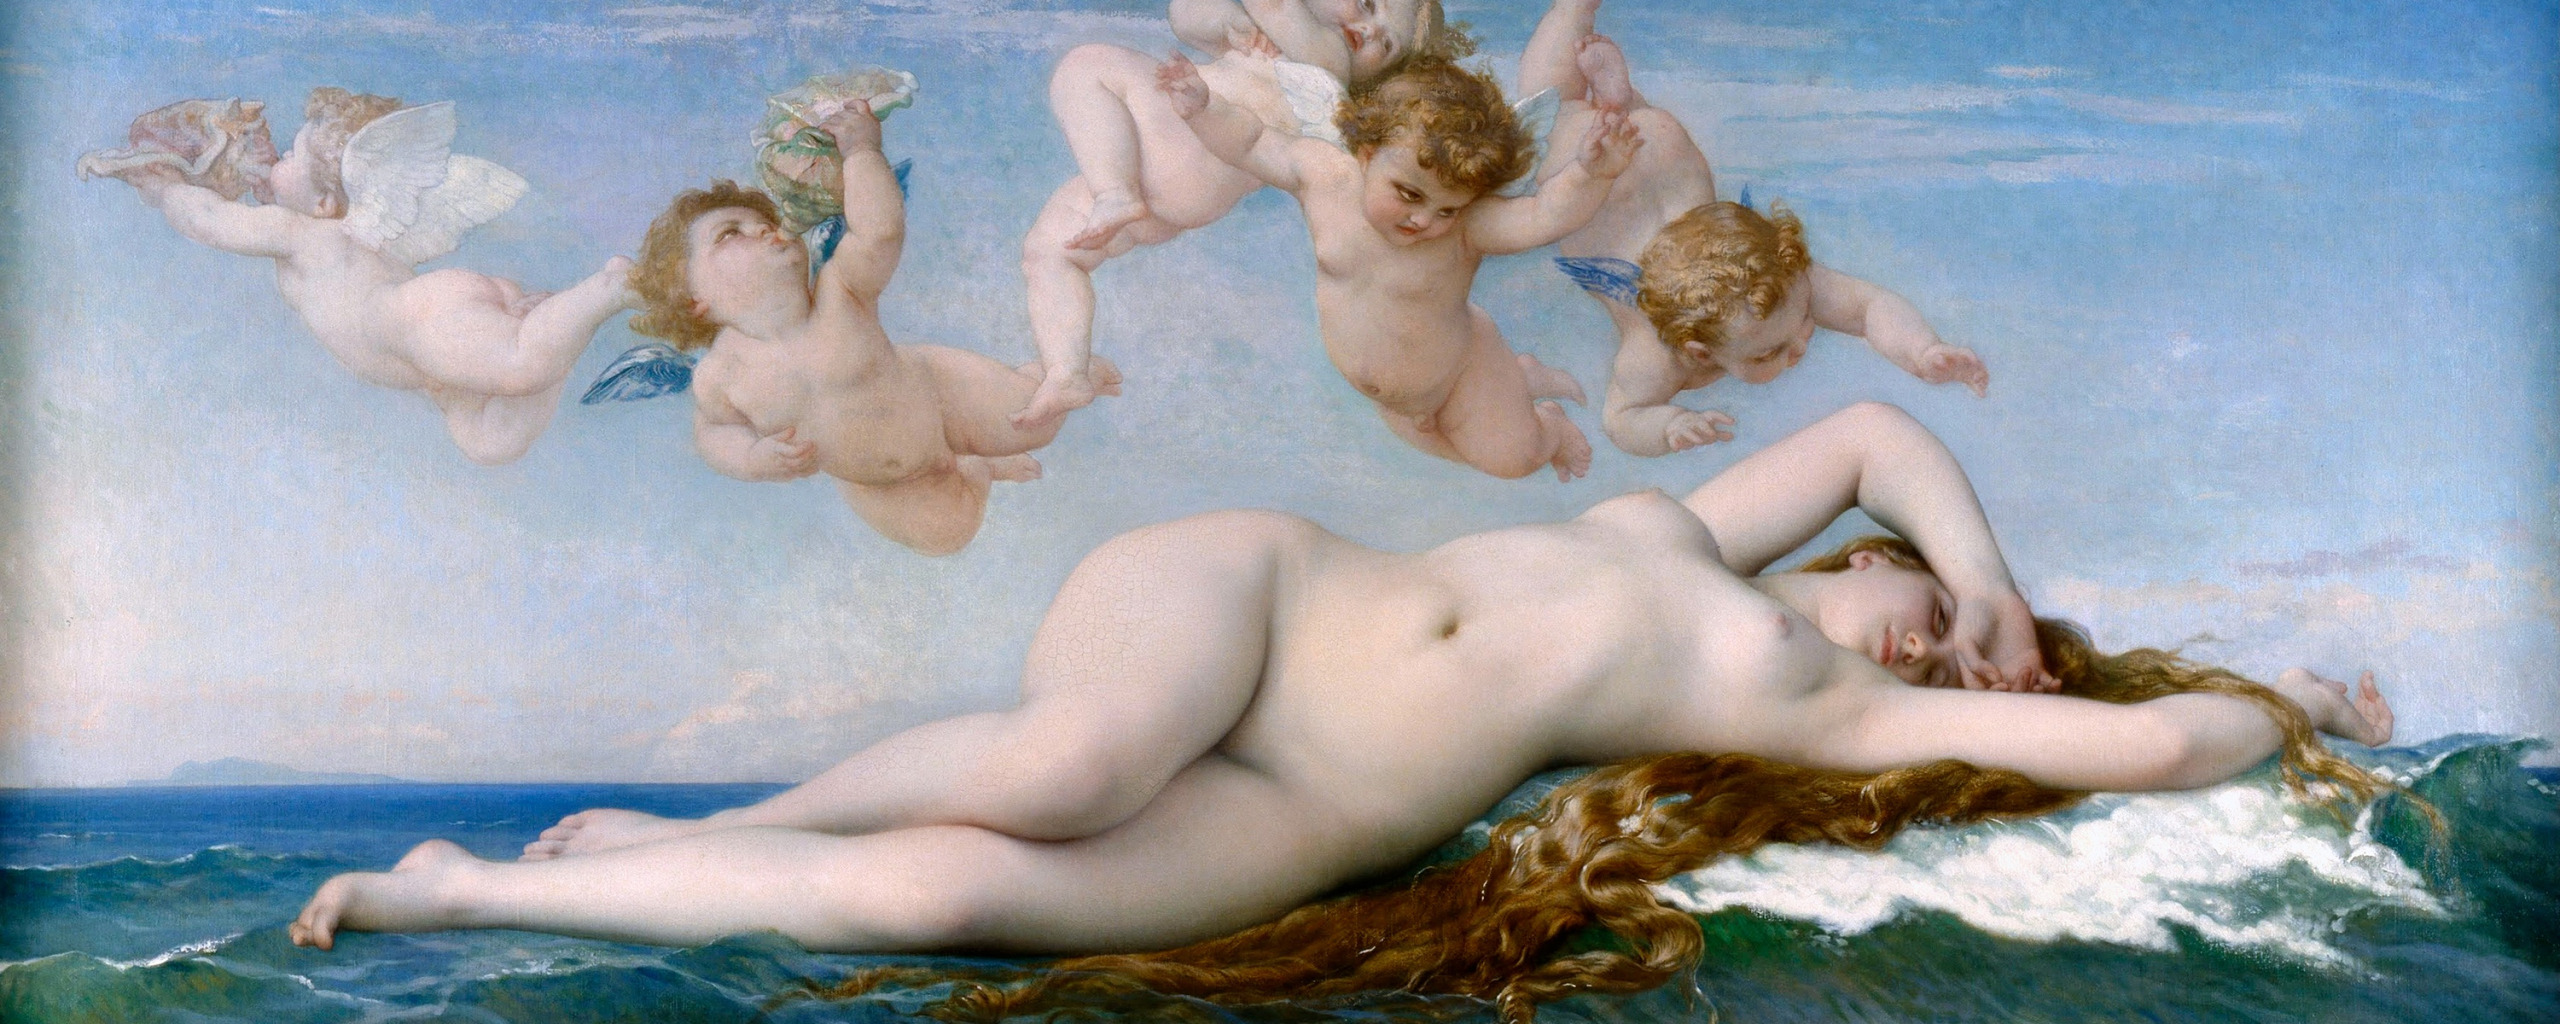 1863, Рождение Венеры, Александр Кабанель, Alexandre Cabanel, The Birth of Venus...